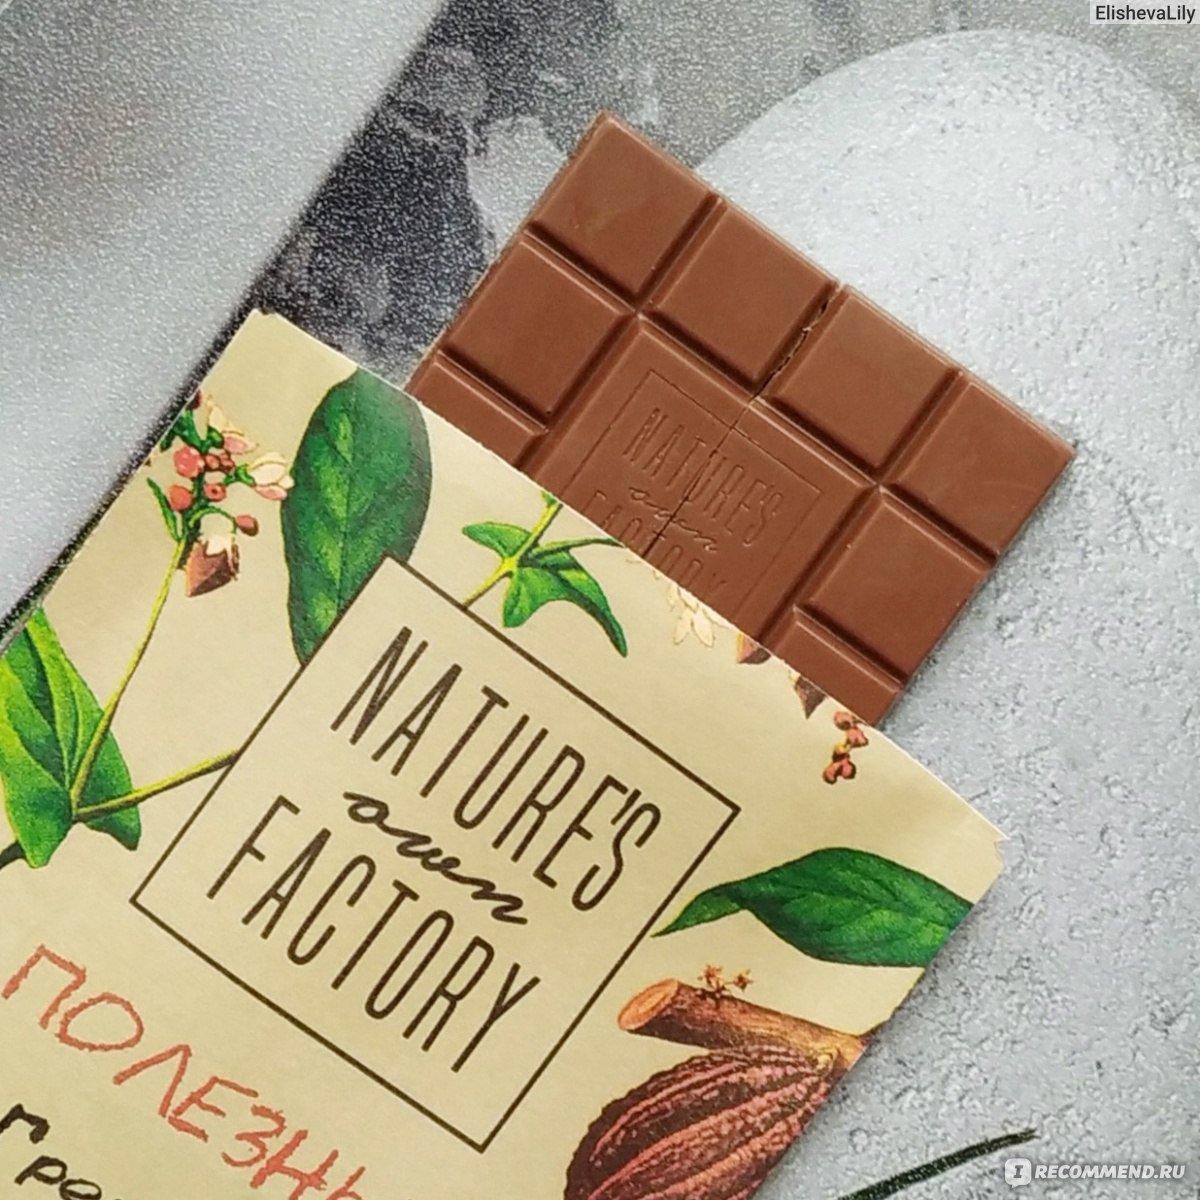 Гречишный шоколад купить. Гречишный шоколад nature's own Factory. Шоколад nature’s own Factory молочный с гречишным чаем 20г.